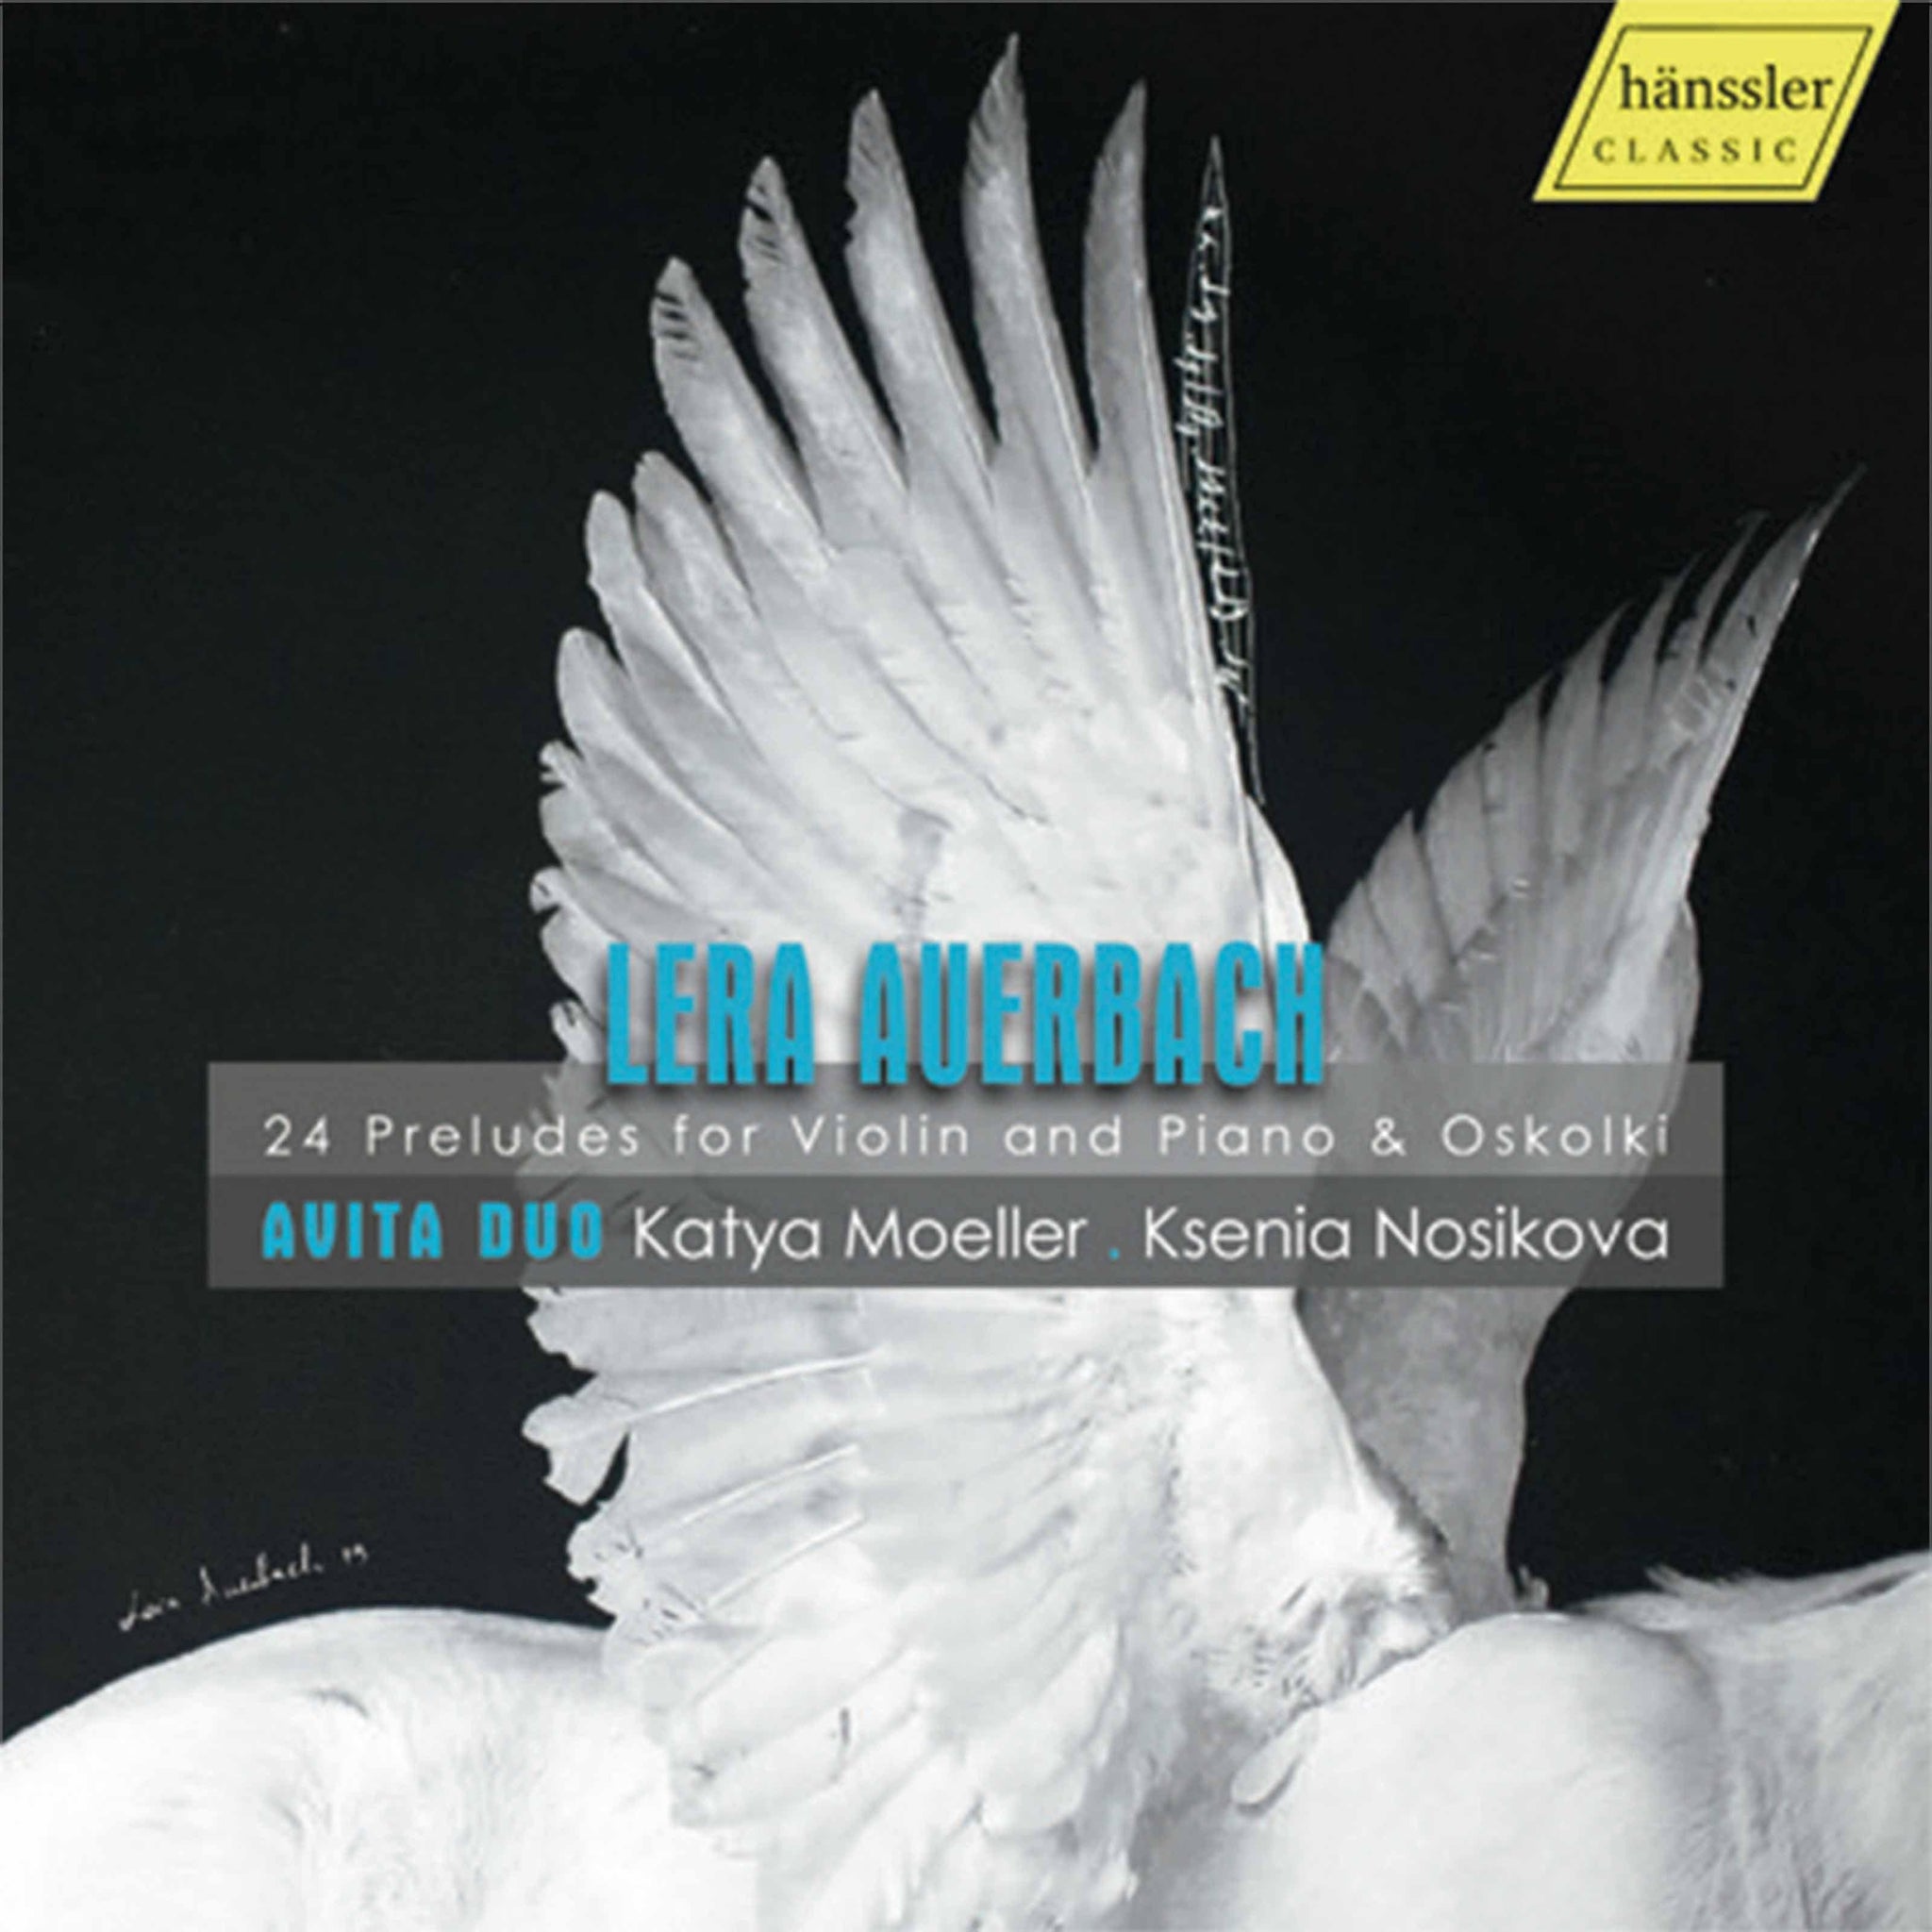 Auerbach: 24 Preludes for Violin and Piano & Oskolki / Avita Duo - ArkivMusic